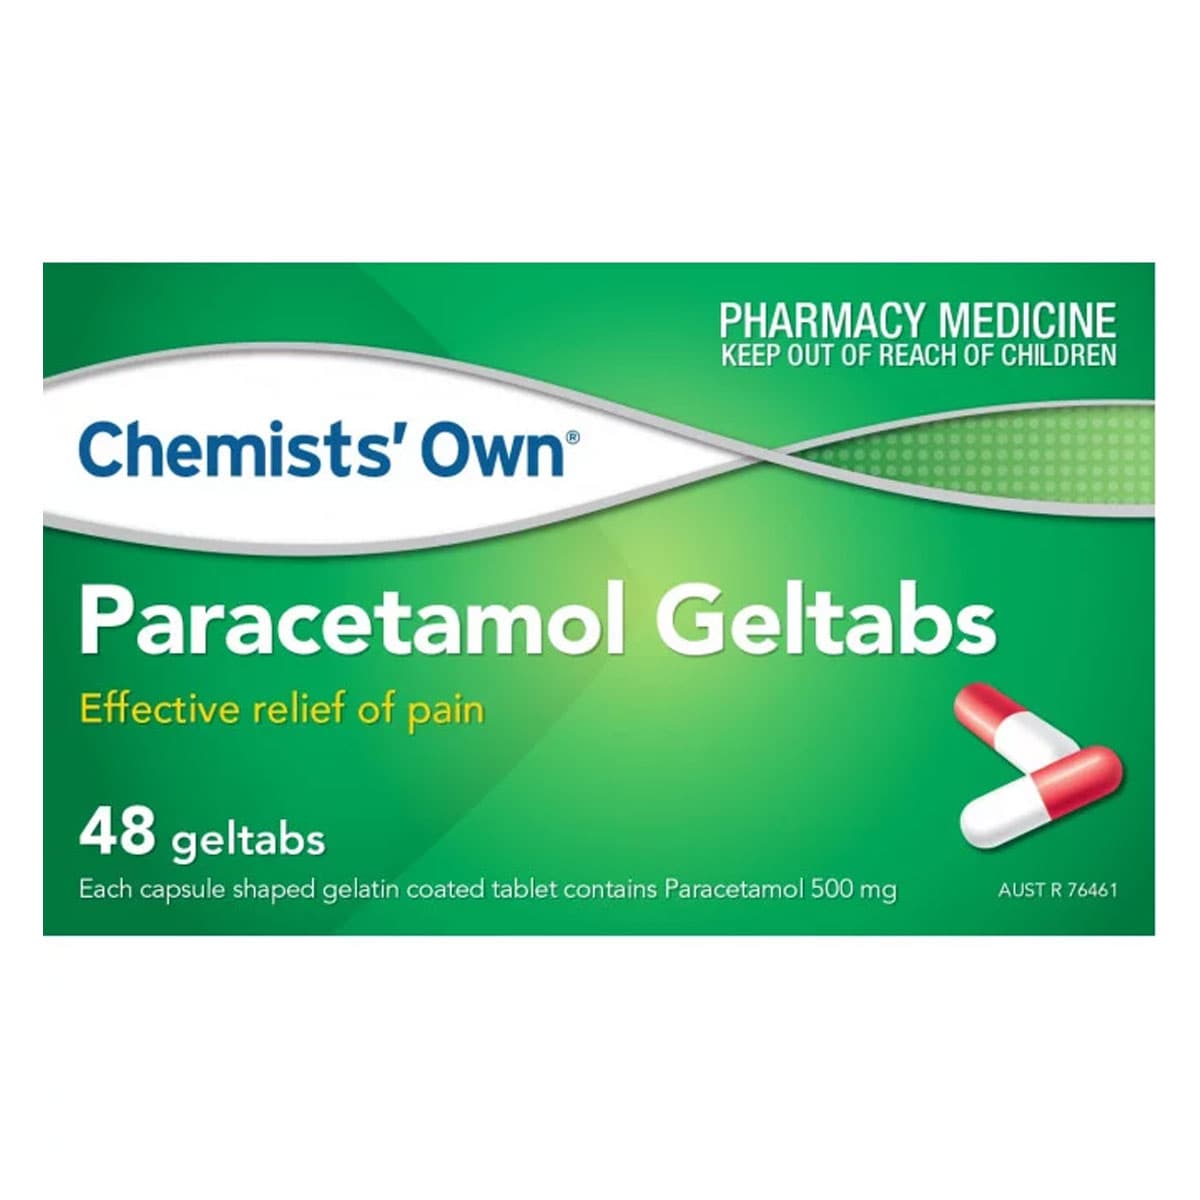 Chemists Own Paracetamol Geltabs Pain Relief 48 Geltabs